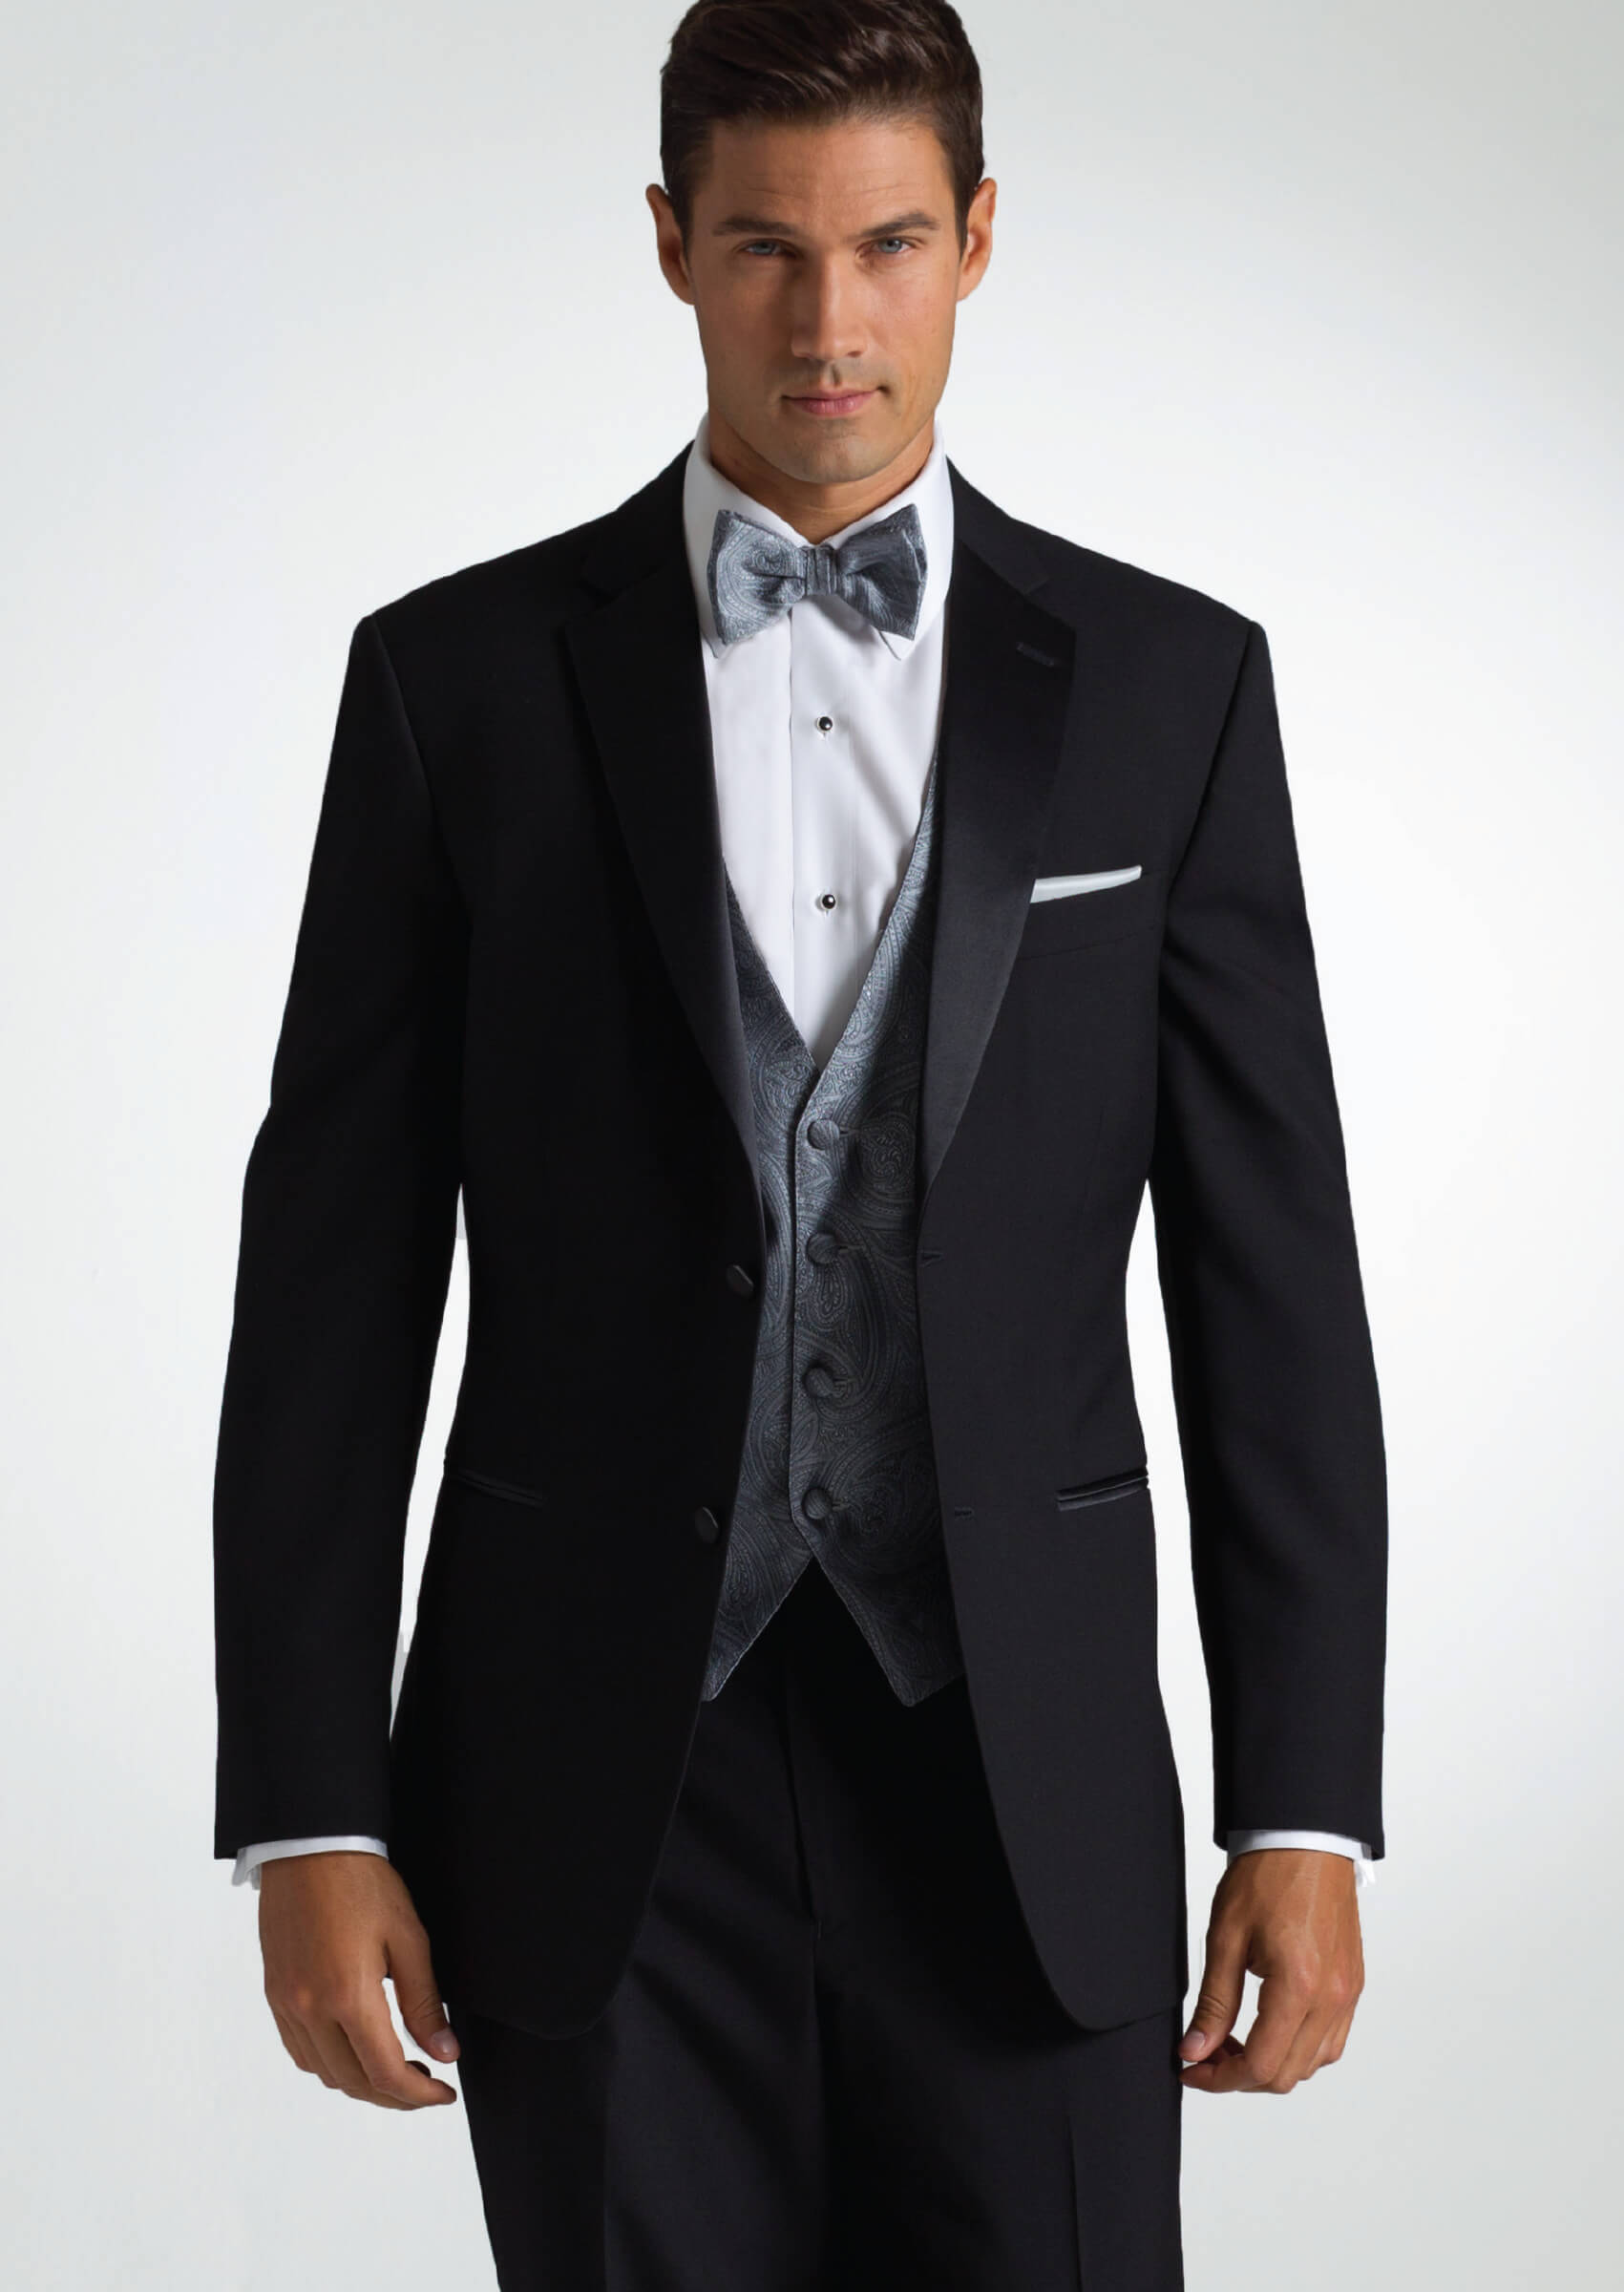 Wedding Tuxedo Rentals Lynbrook NY